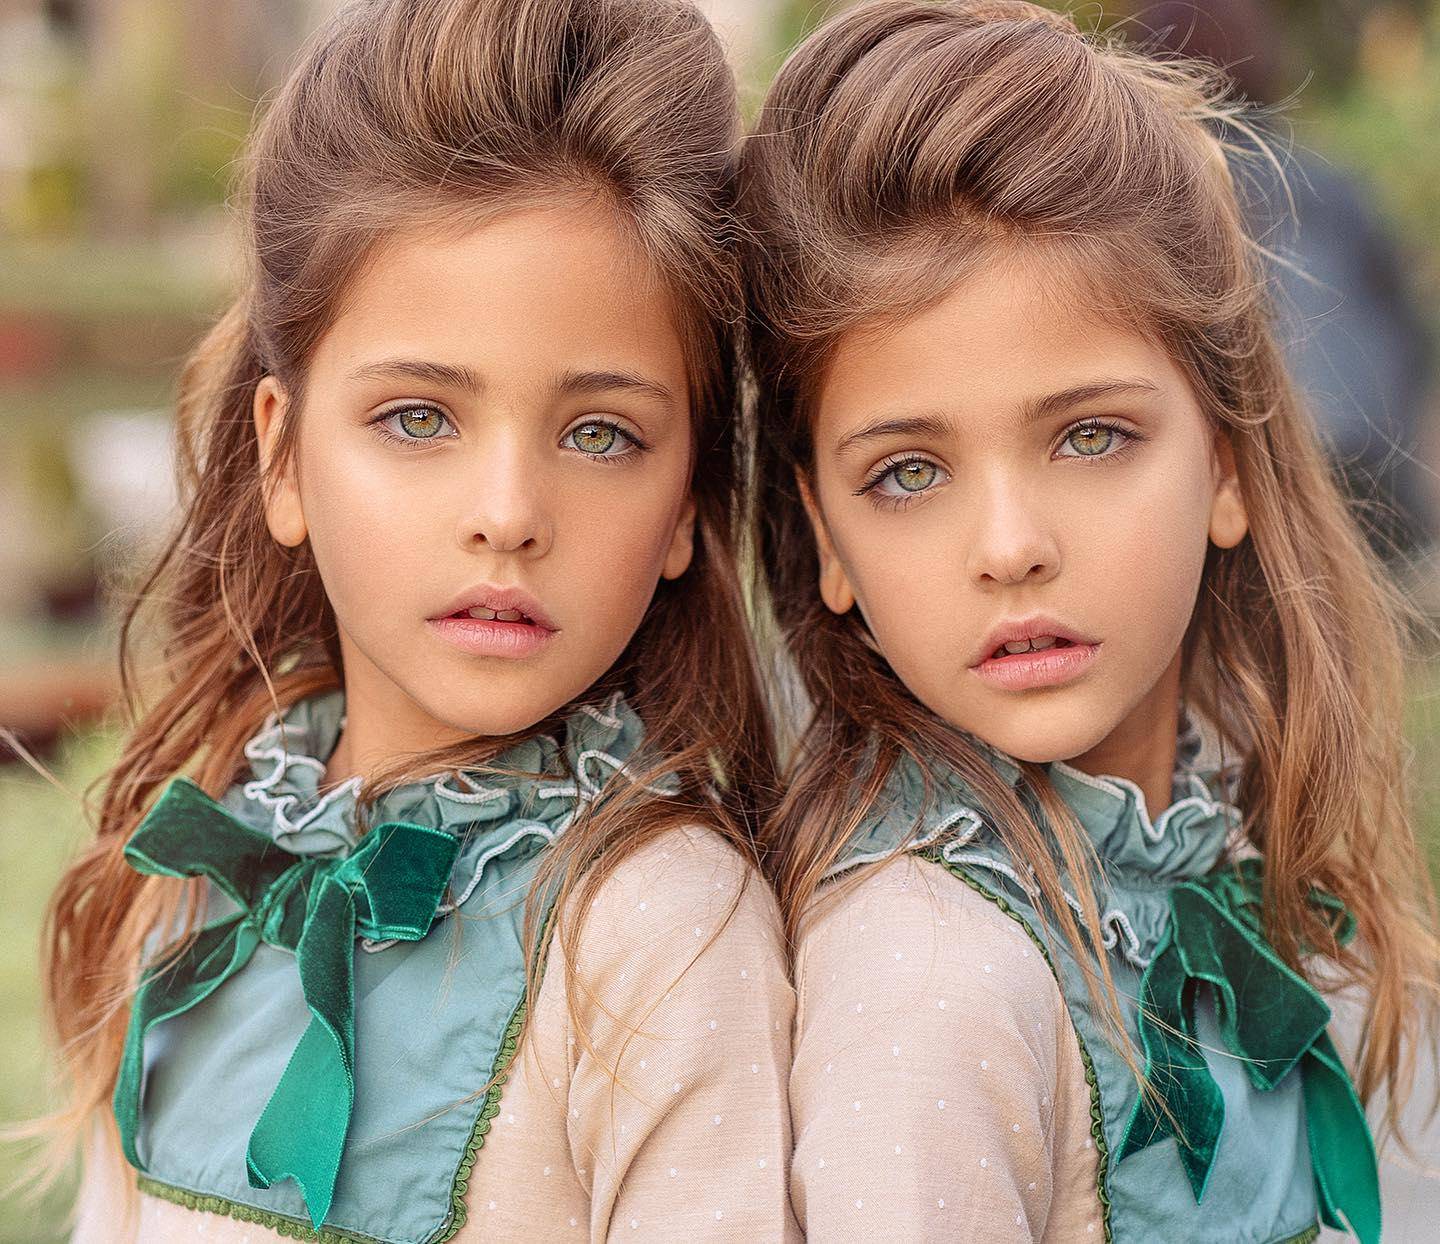 原创全球最美双胞胎走红吸粉百万签约模特公司还给奢侈大牌带货